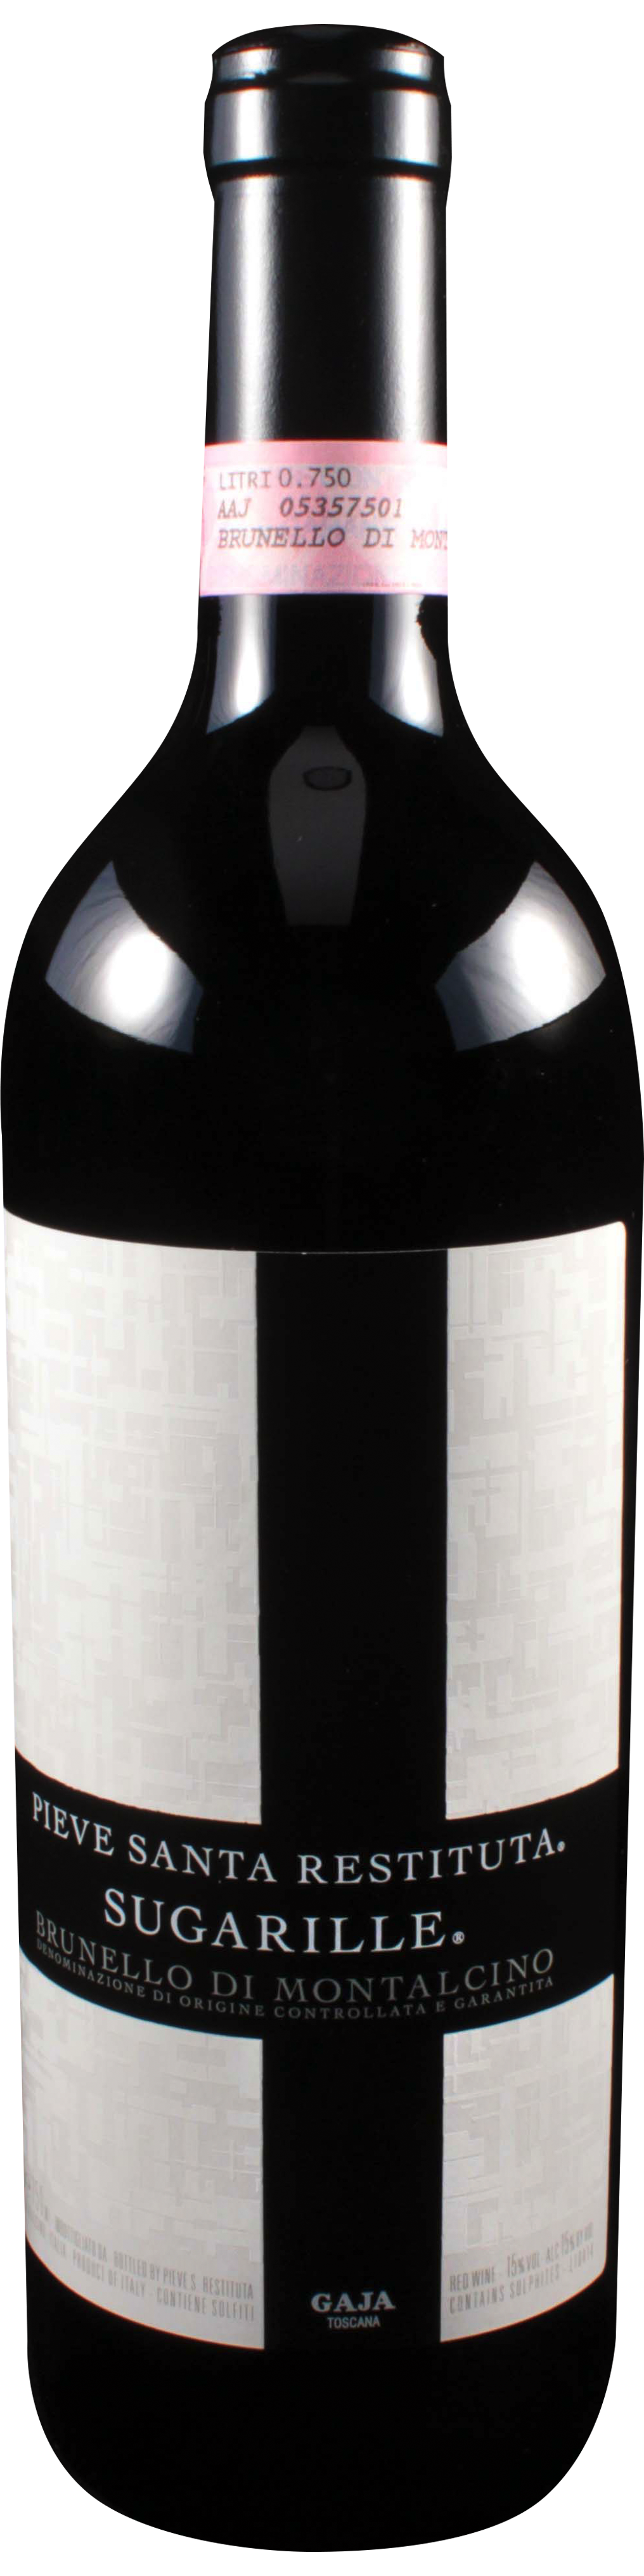 Bottle shot of 2001 Brunello di Montalcino Sugarille